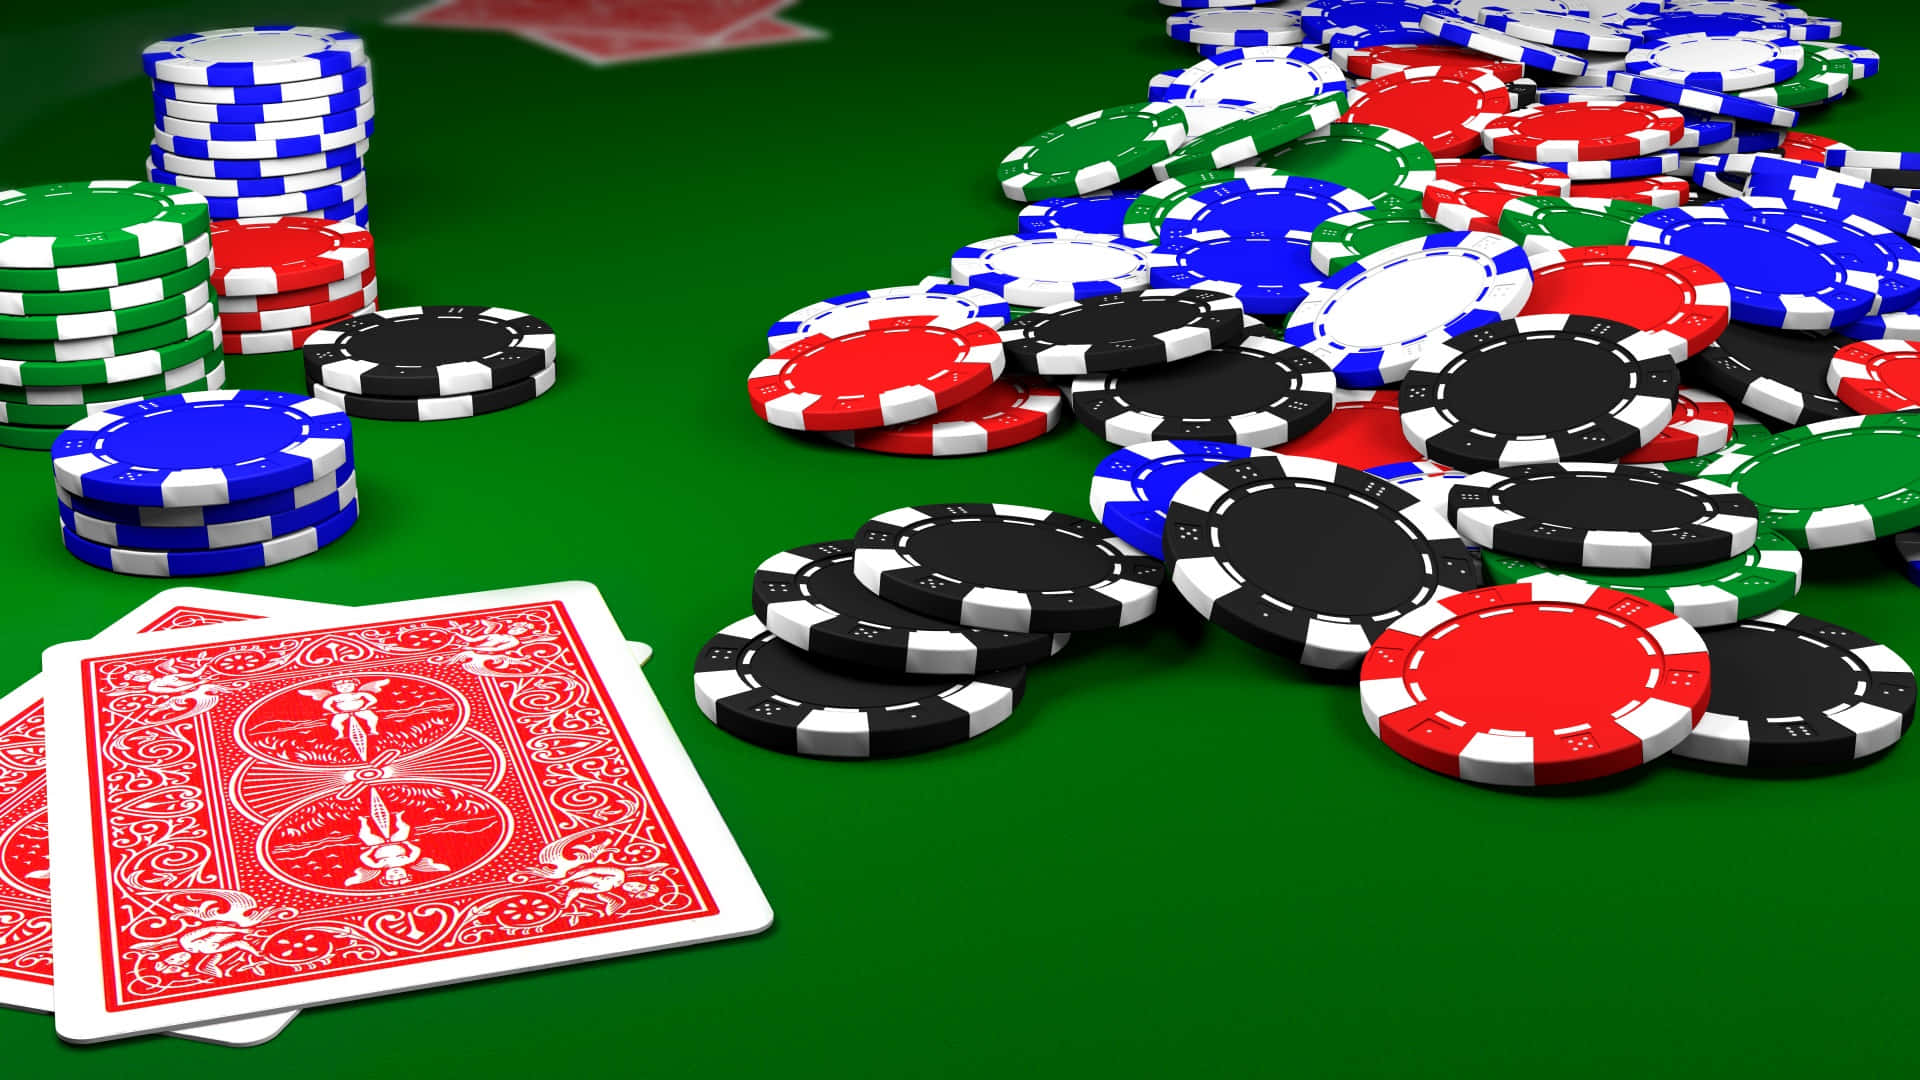 Coinvolgenteallestimento Del Tavolo Da Poker In Un Sofisticato Ambiente Di Gioco